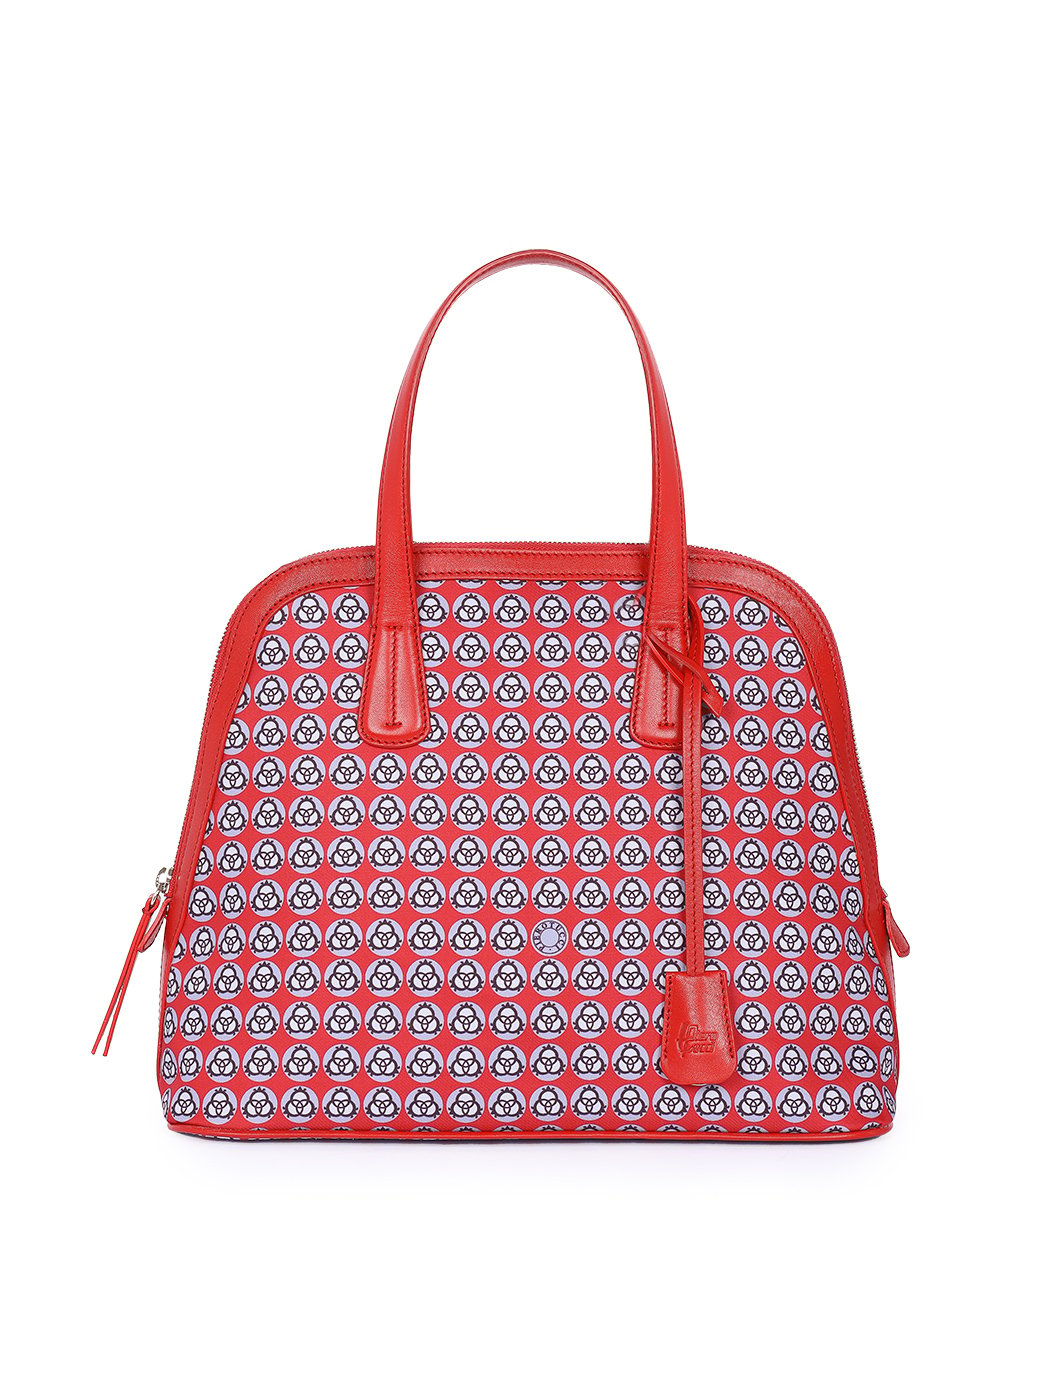 Zip-around Dome Satchel Handbag Red